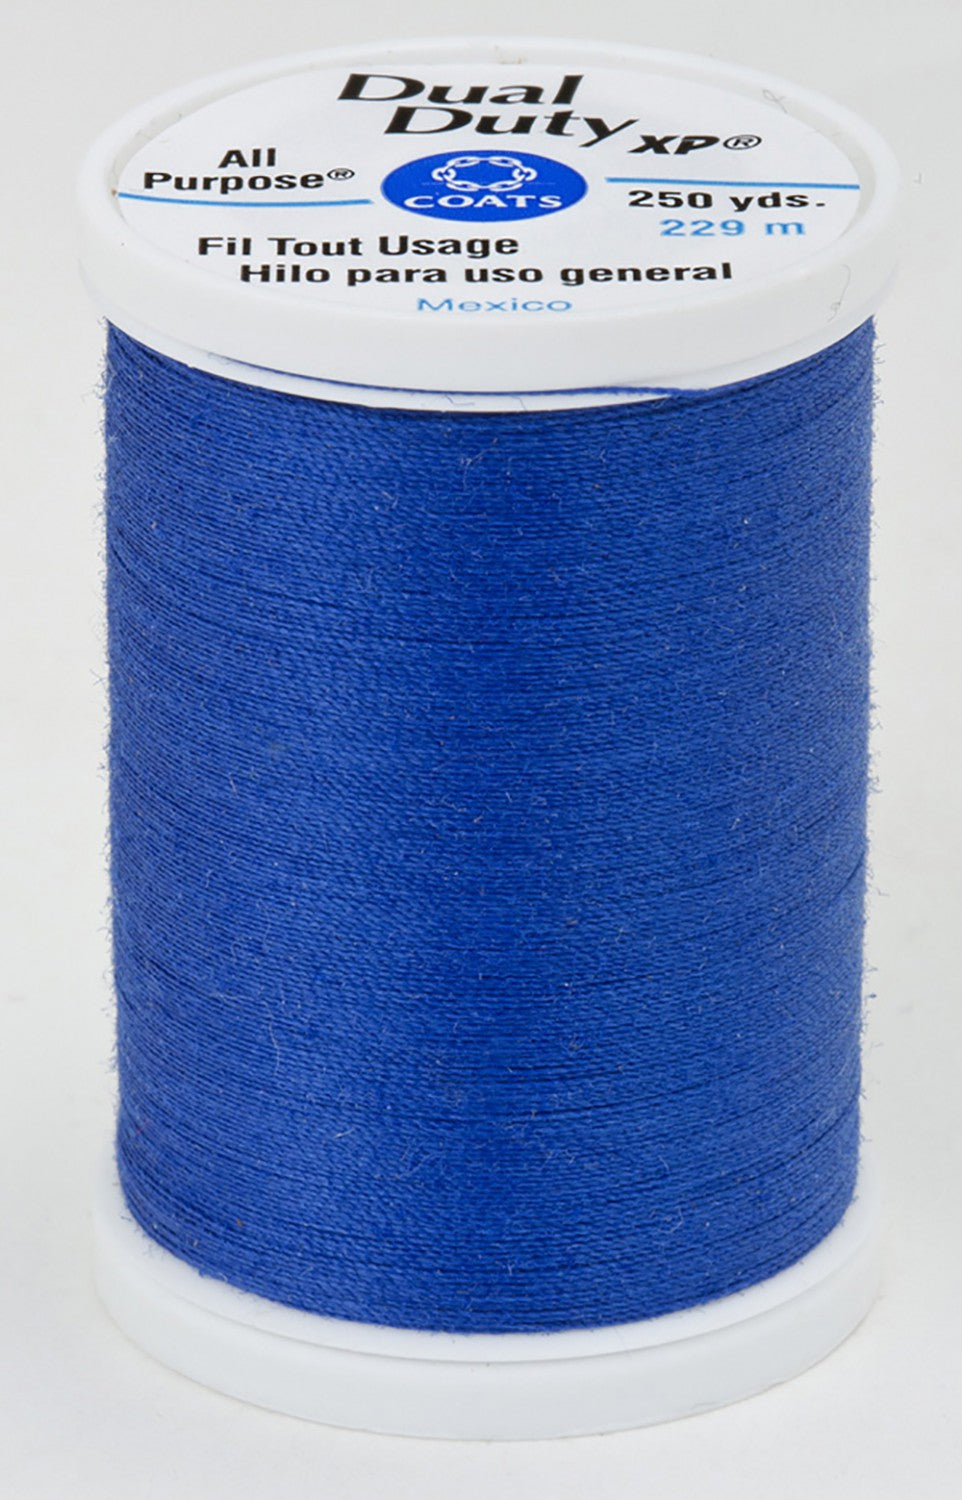 4470 Yale Blue Dual Duty XP Polyester Thread 250yds